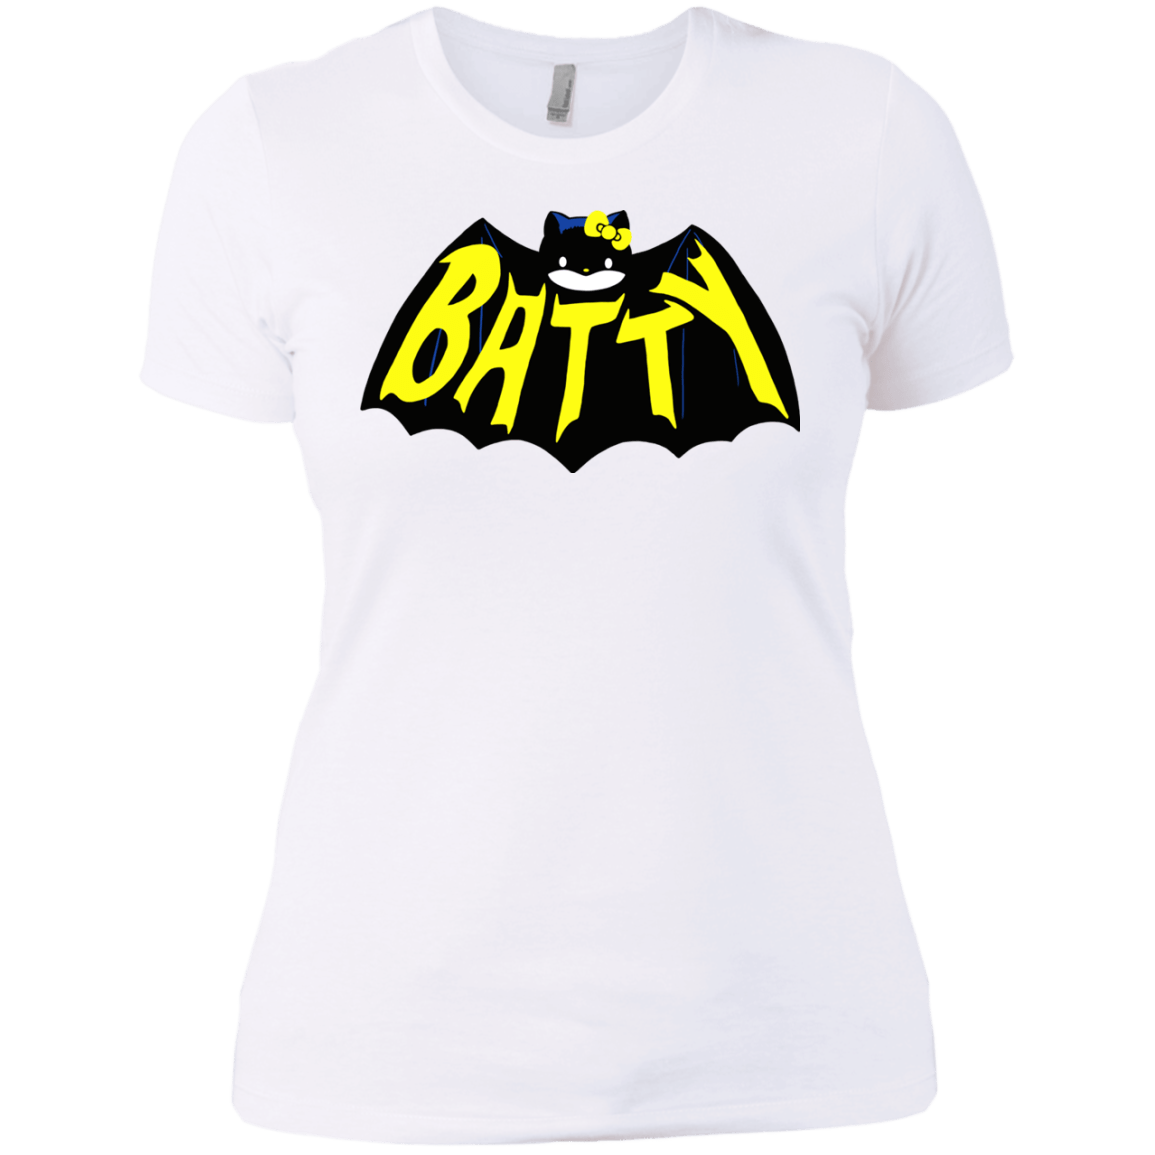 T-Shirts White / X-Small Hello Batty Women's Premium T-Shirt